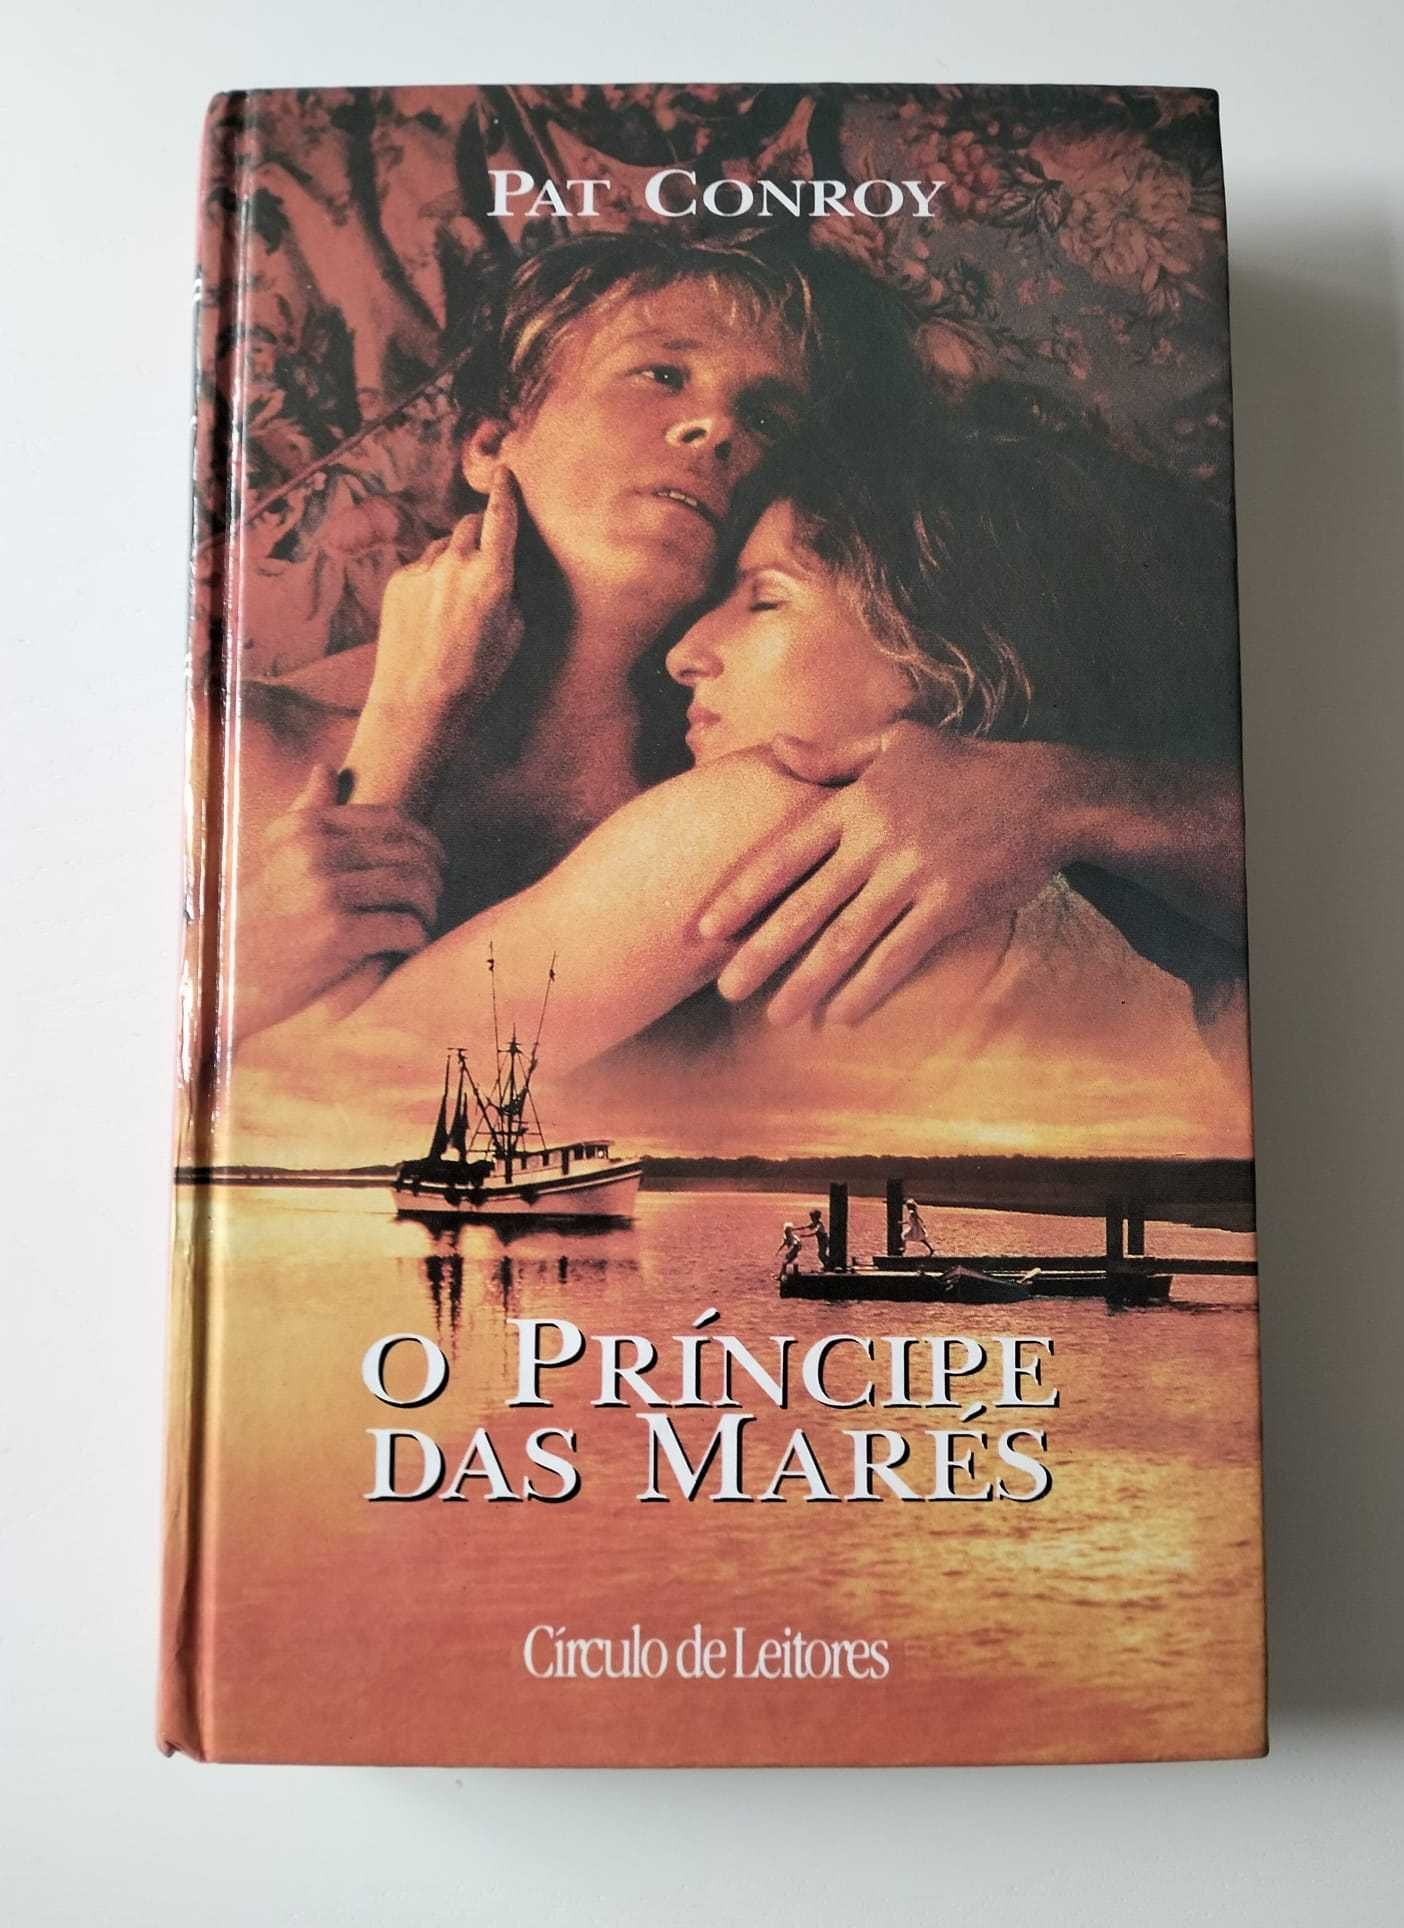 Livro "O Príncipe das Marés" - Pat Conroy